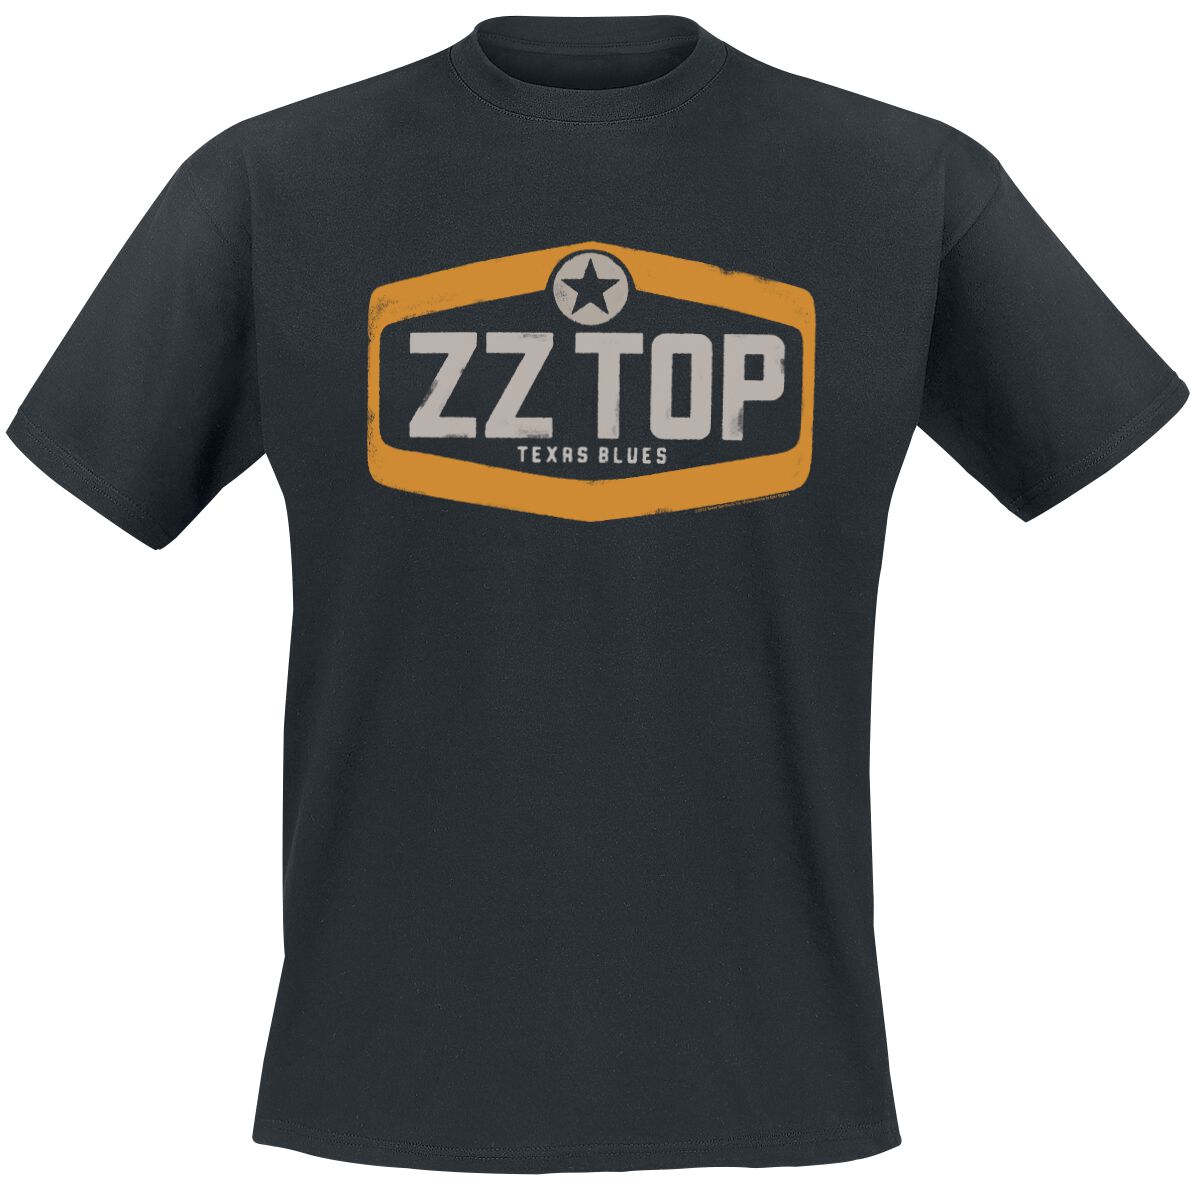 ZZ Top T-Shirt - Texas Blues - S bis XL - für Männer - Größe XL - schwarz  - Lizenziertes Merchandise!